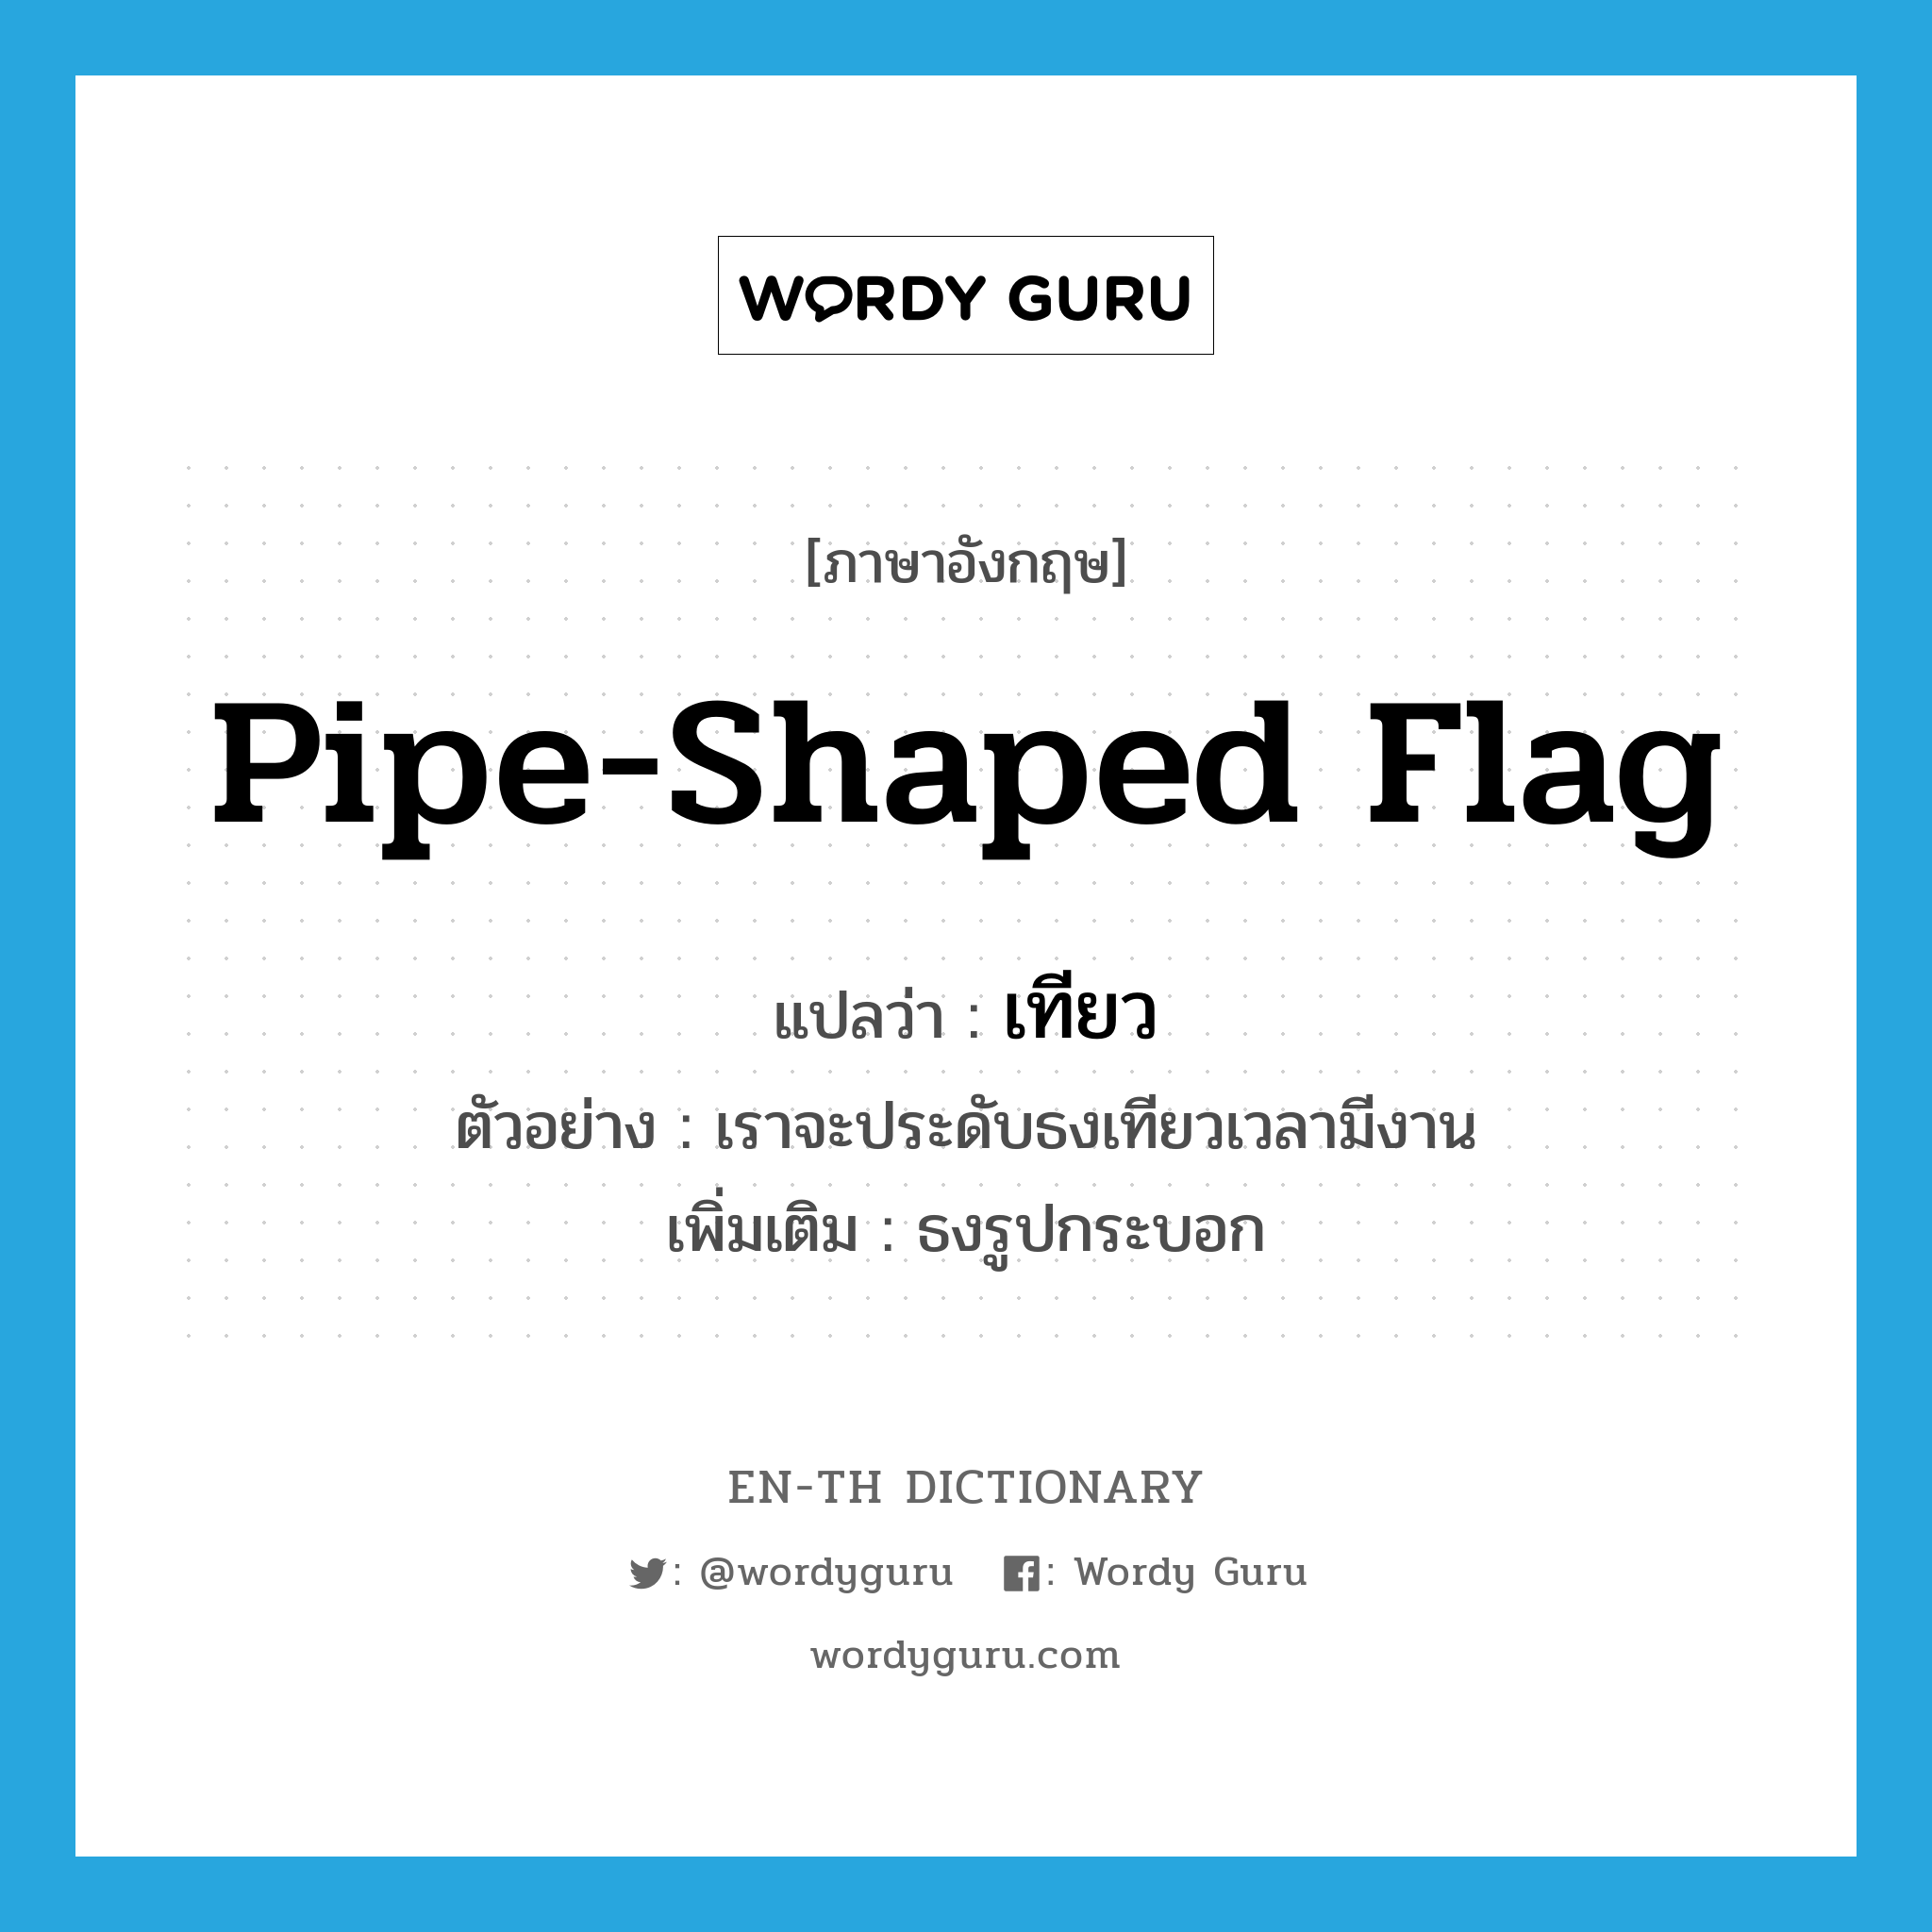 เทียว ภาษาอังกฤษ?, คำศัพท์ภาษาอังกฤษ เทียว แปลว่า pipe-shaped flag ประเภท N ตัวอย่าง เราจะประดับธงเทียวเวลามีงาน เพิ่มเติม ธงรูปกระบอก หมวด N